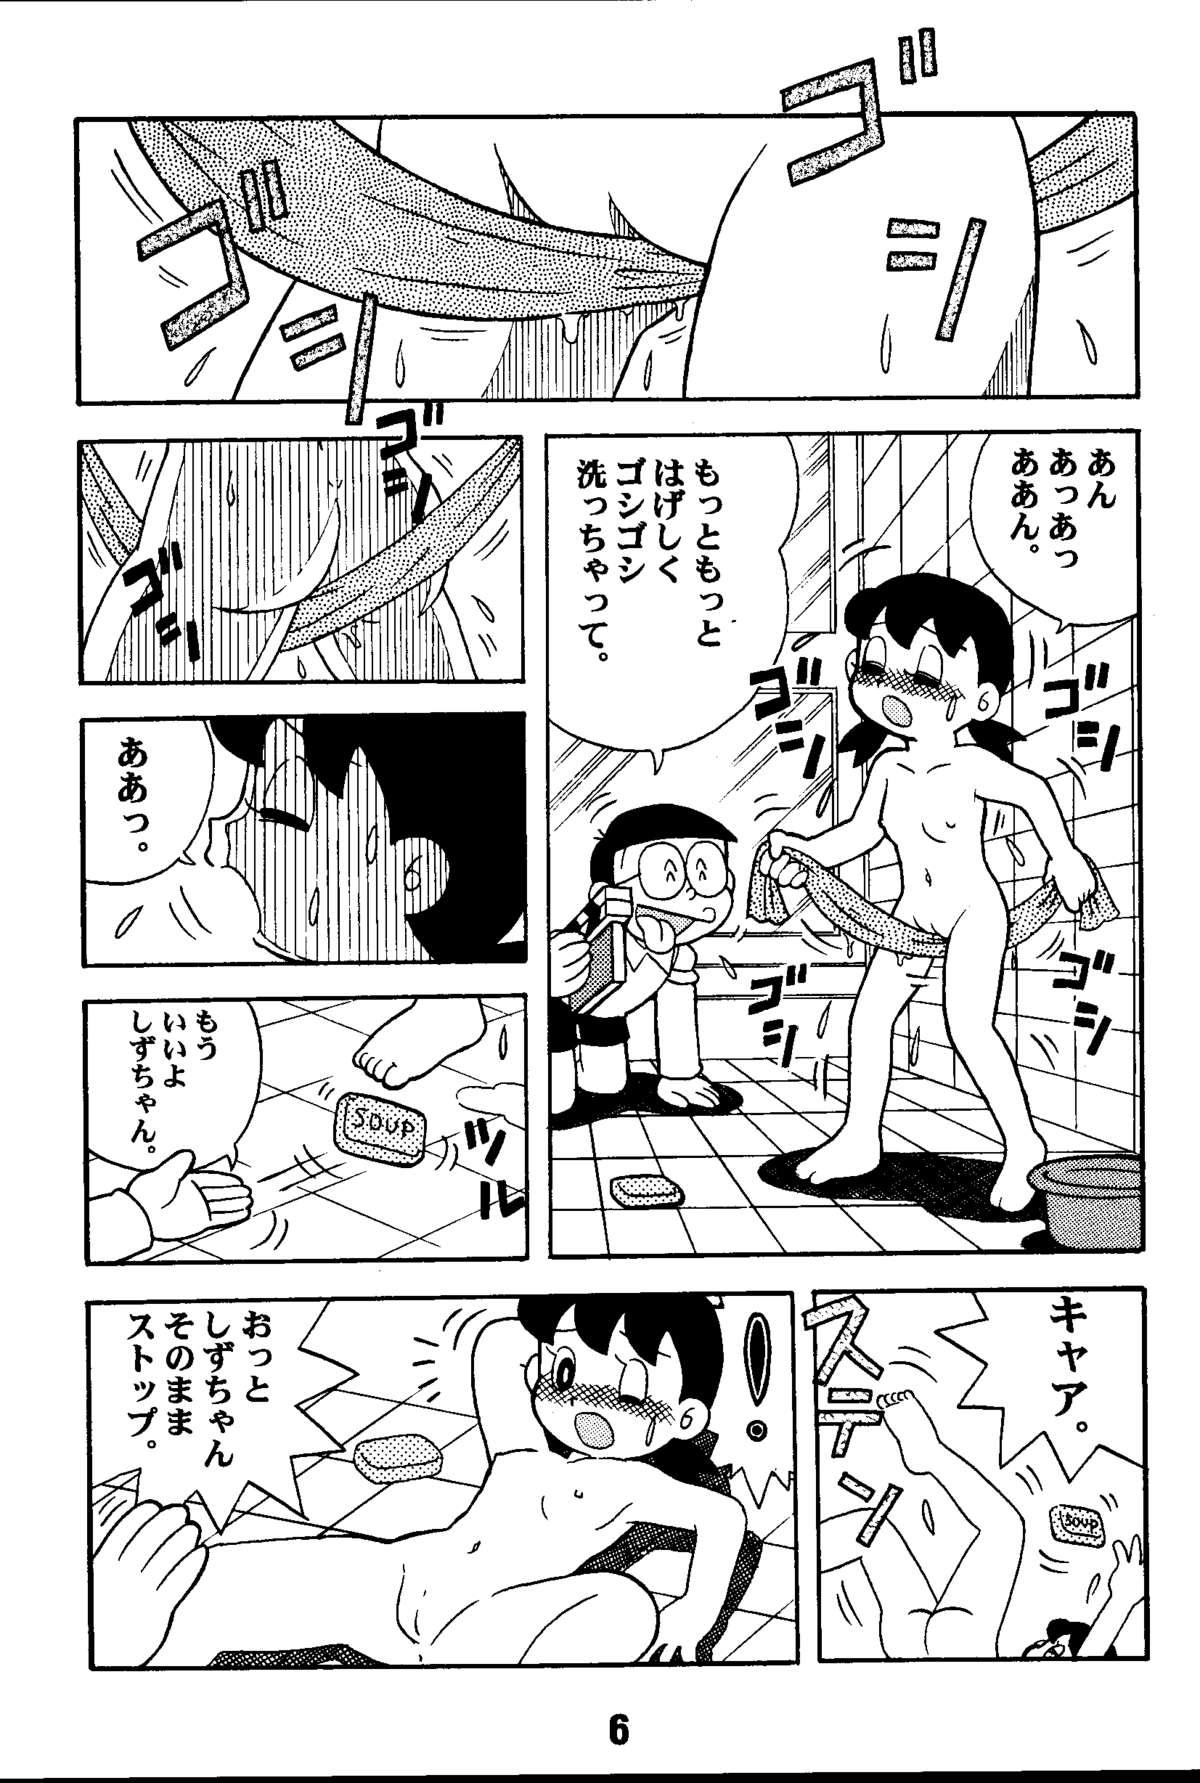 Club Magical Mystery 2 - Doraemon Esper mami 21 emon Raw - Page 6